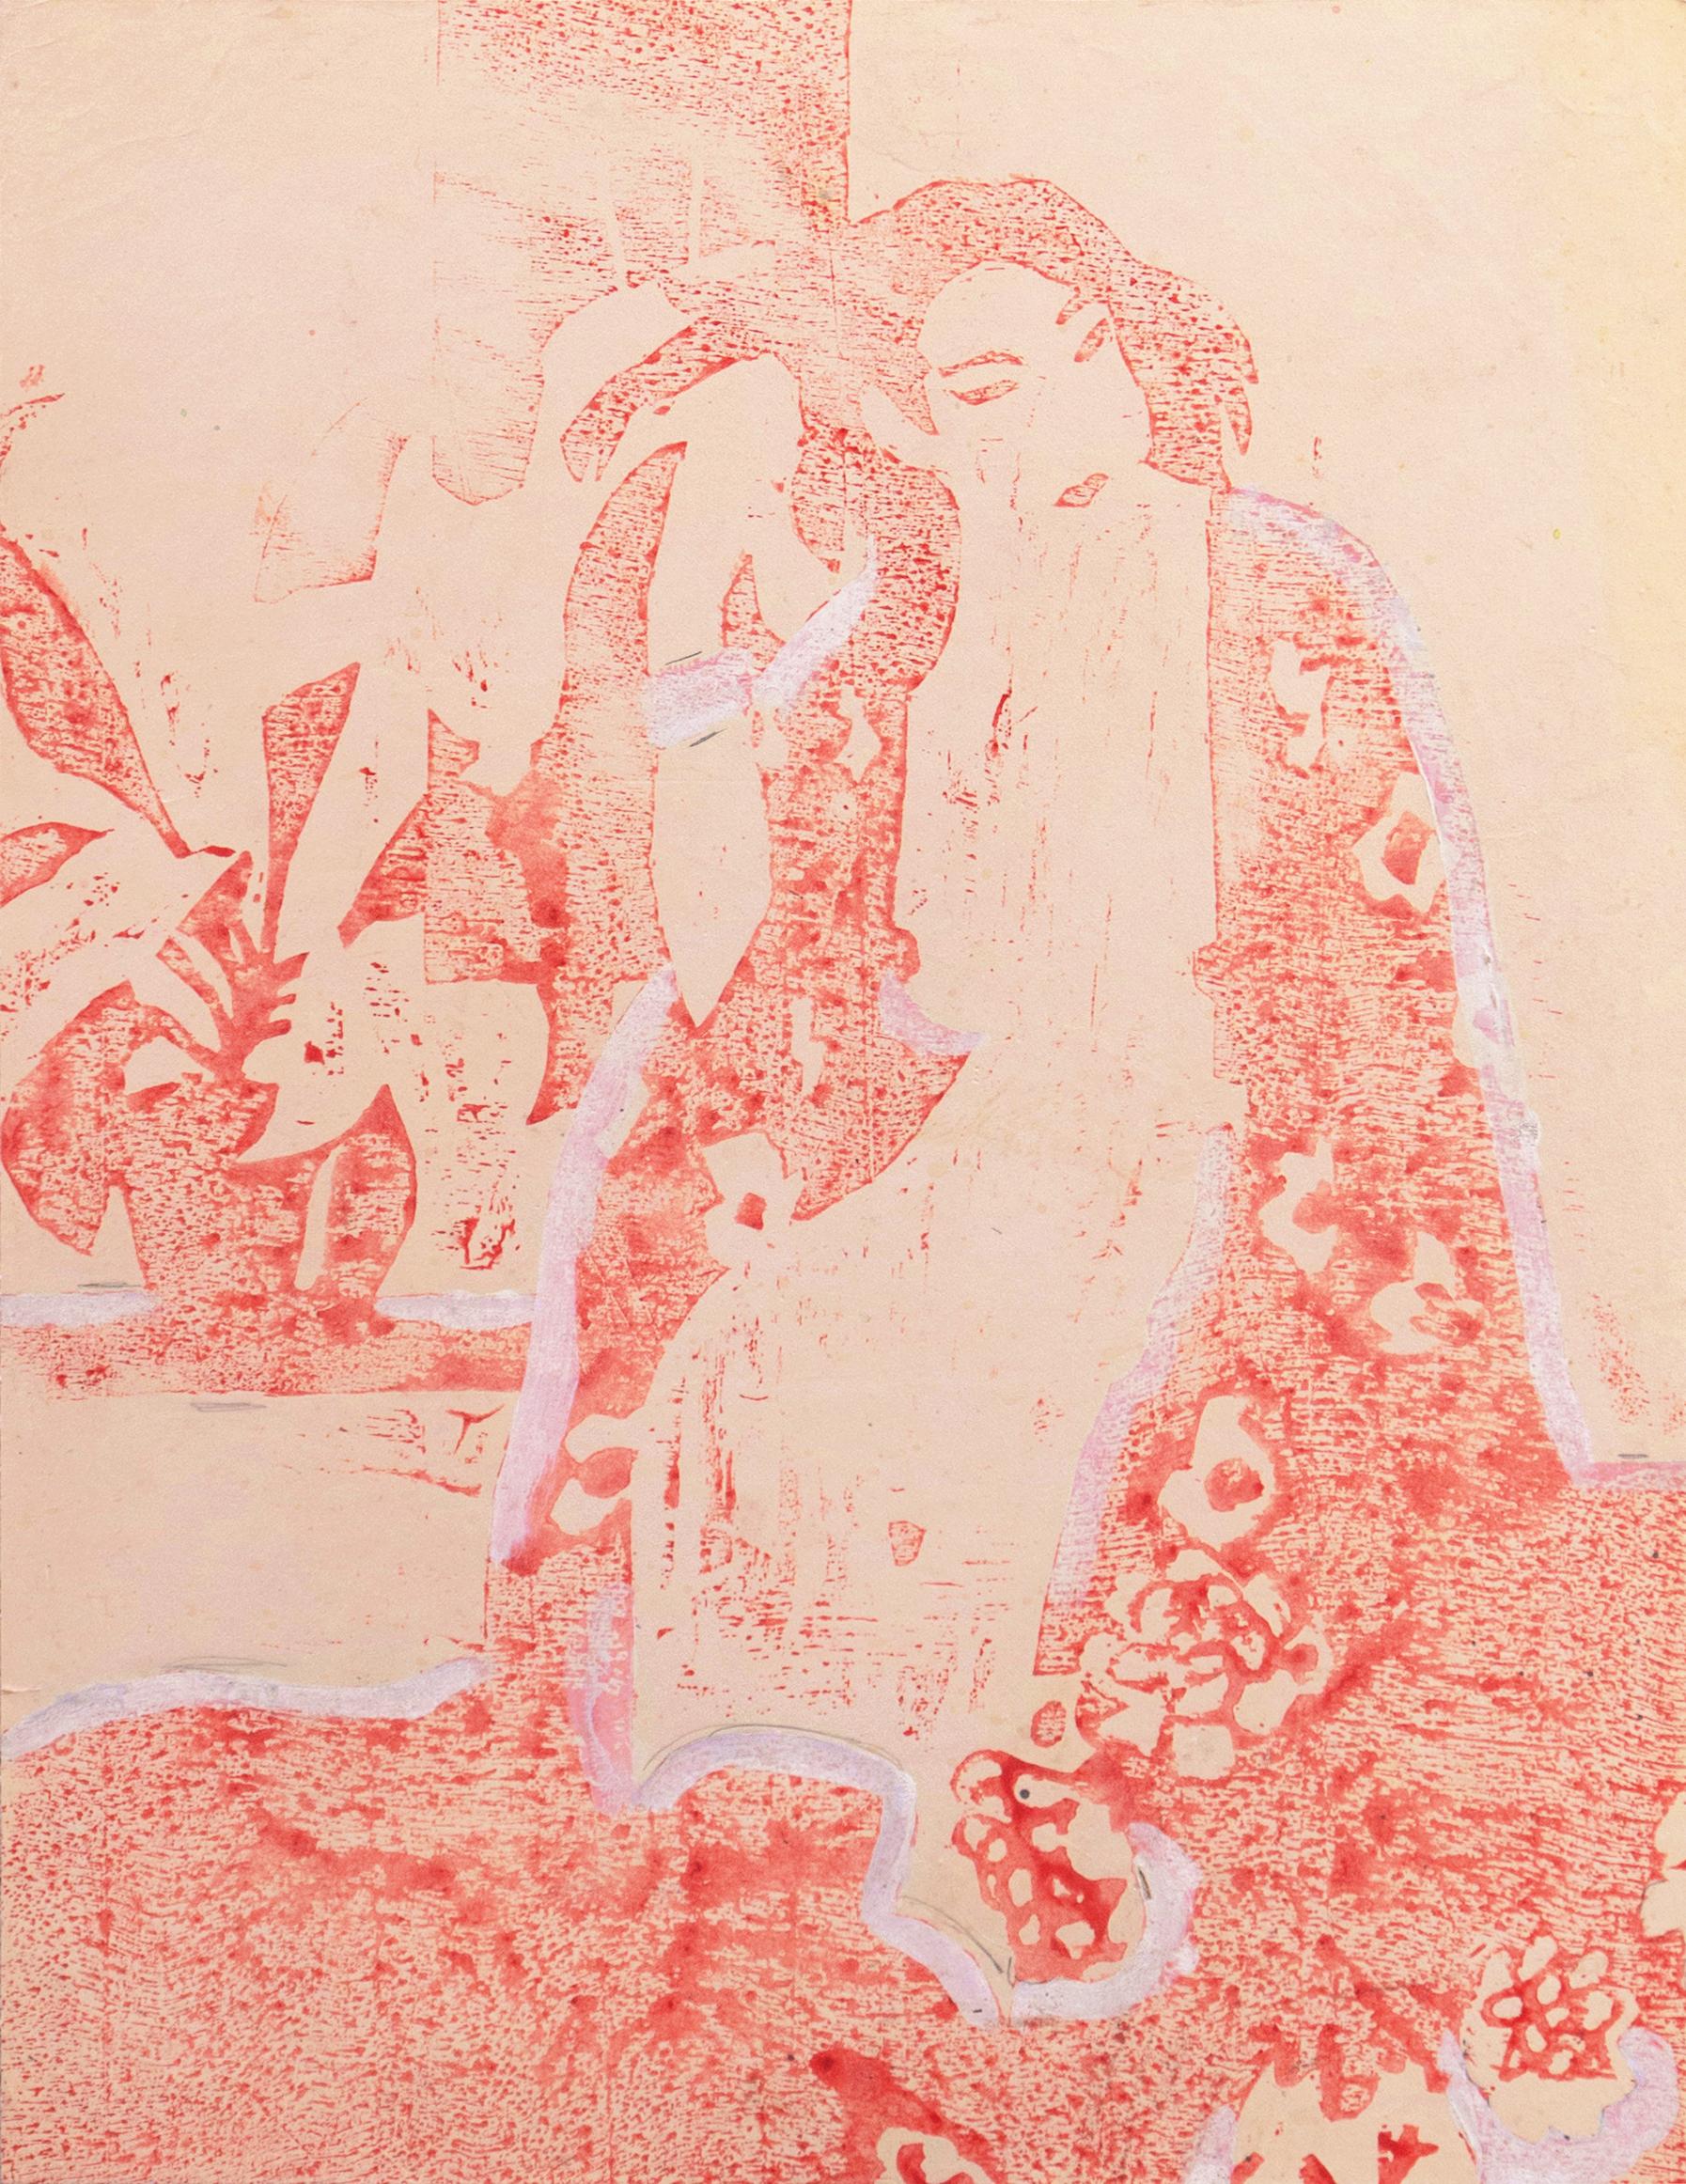 Victor Di Gesu Figurative Print - 'Woman in a Kimono', Paris, Louvre, Salon d'Automne, Académie Chaumière, LACMA